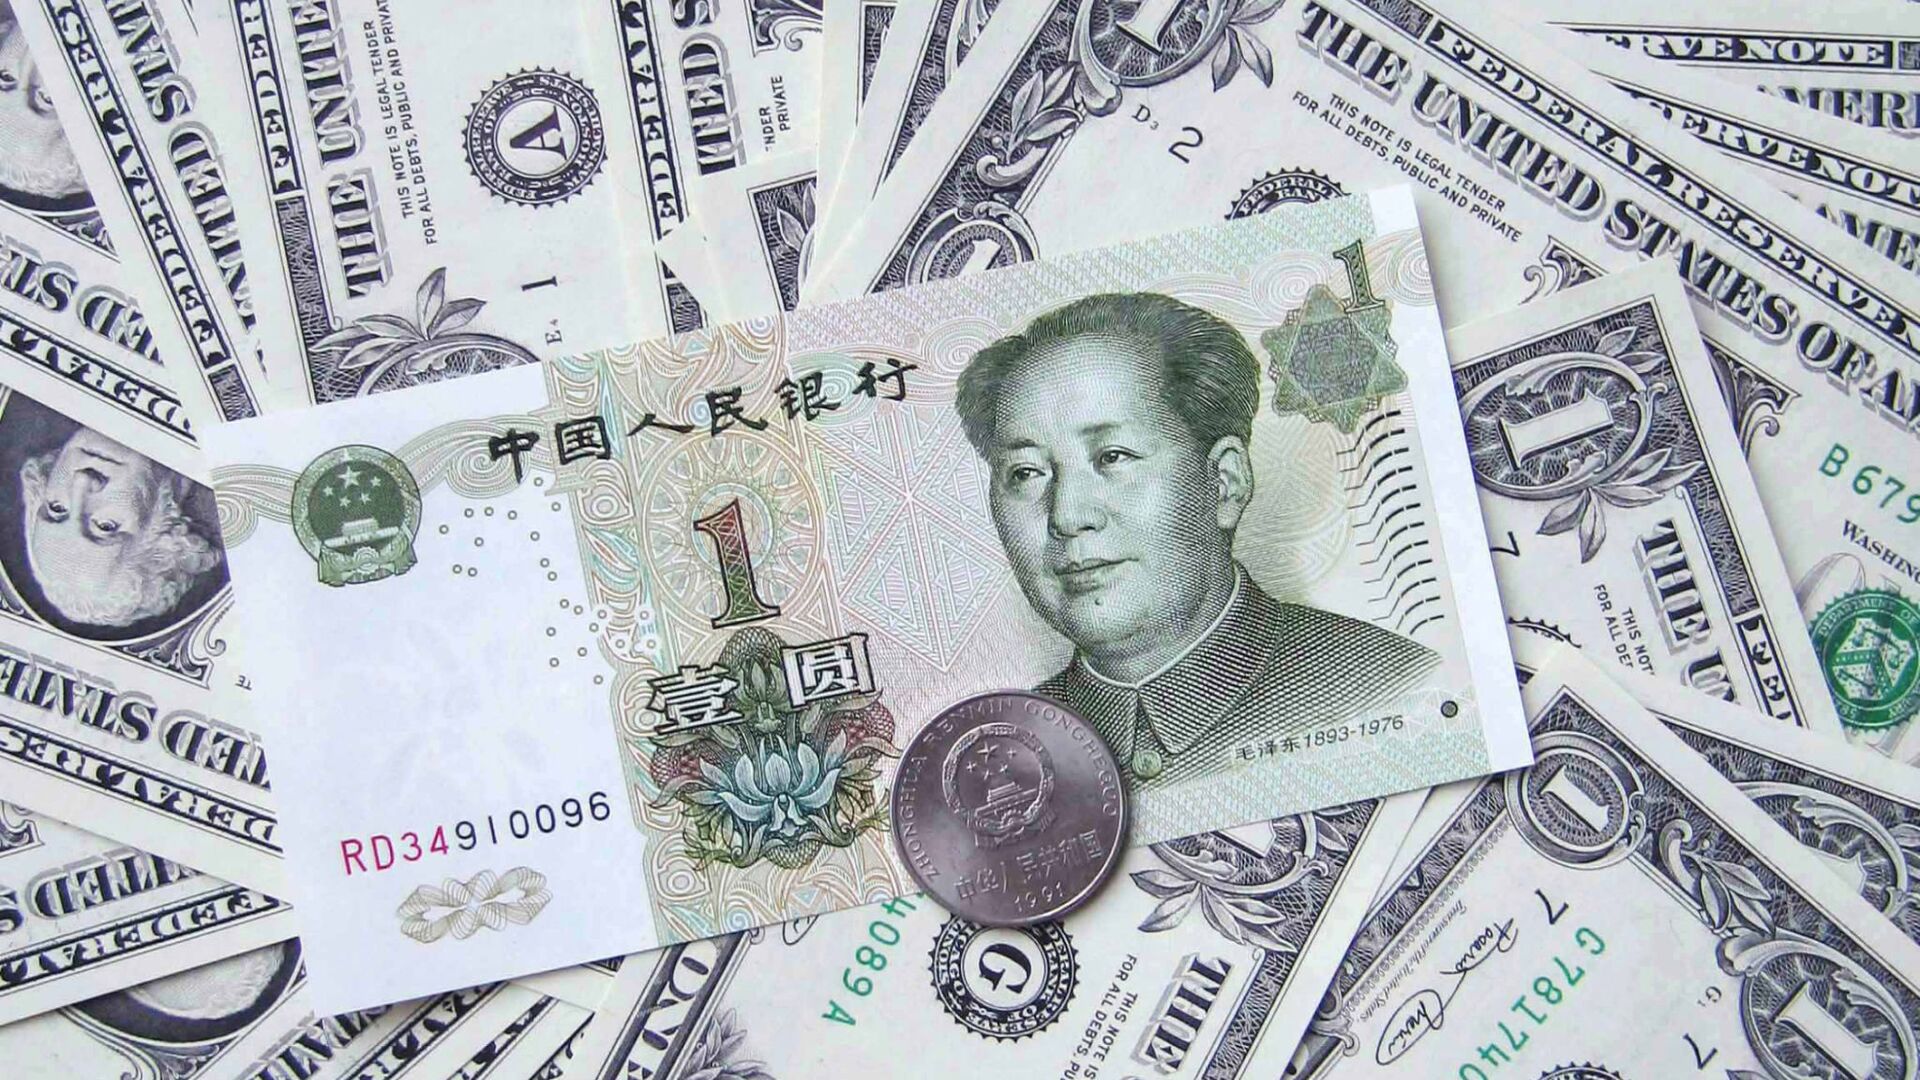 Денежные купюры. Доллары США. Китайская банкнота, архивное фото - Sputnik Таджикистан, 1920, 18.08.2022